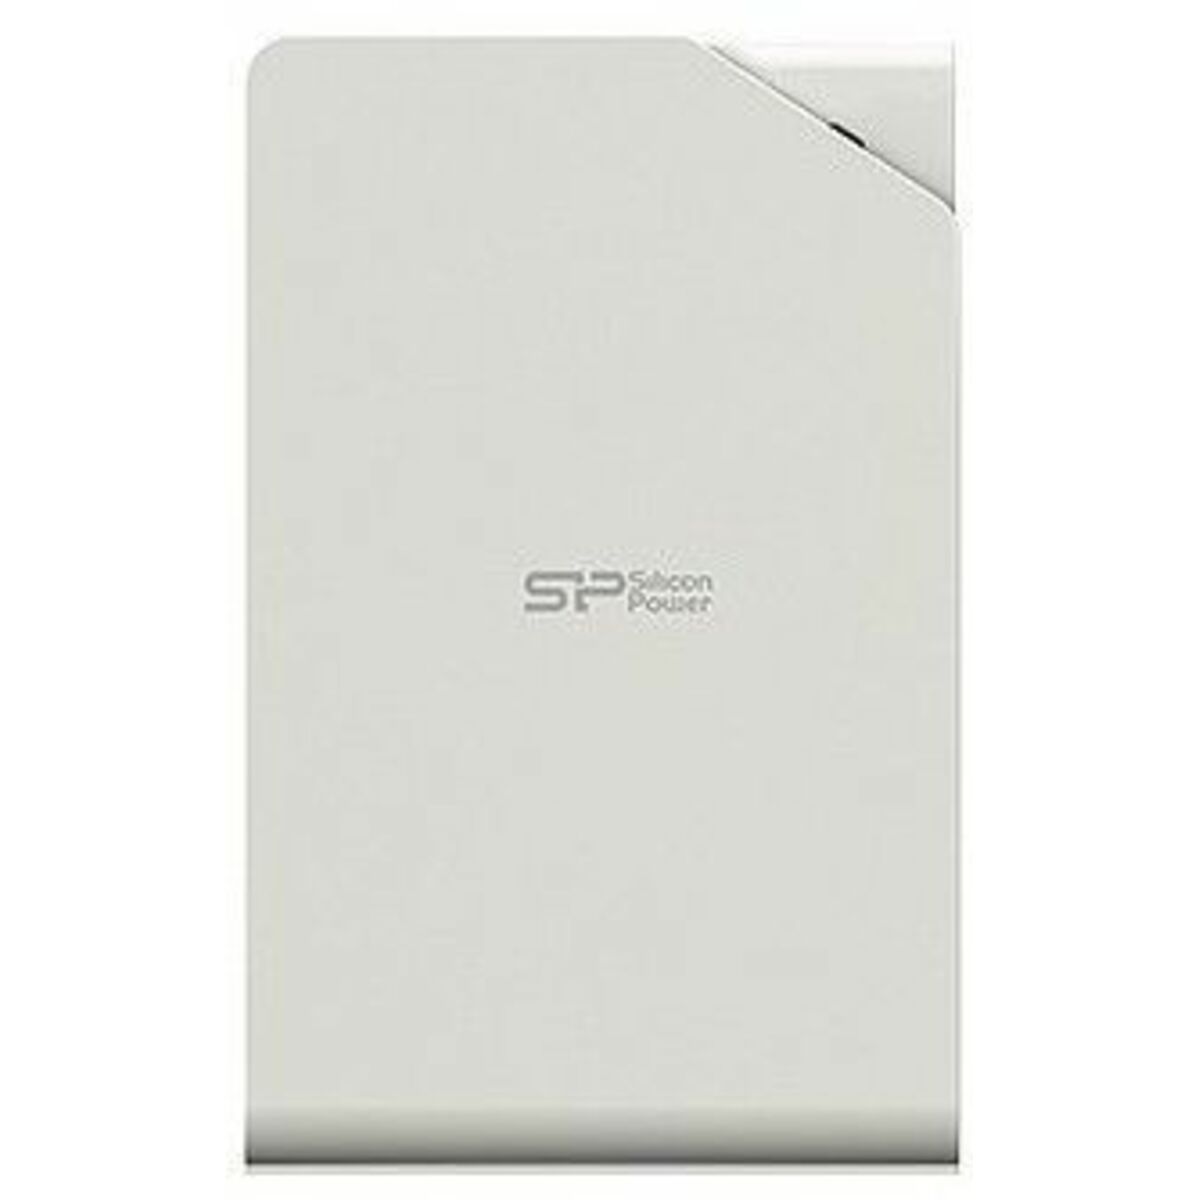 Жесткий диск Silicon Power USB 3.0 1Tb SP010TBPHDS03S3W S03 Stream 2.5 (Цвет: White)